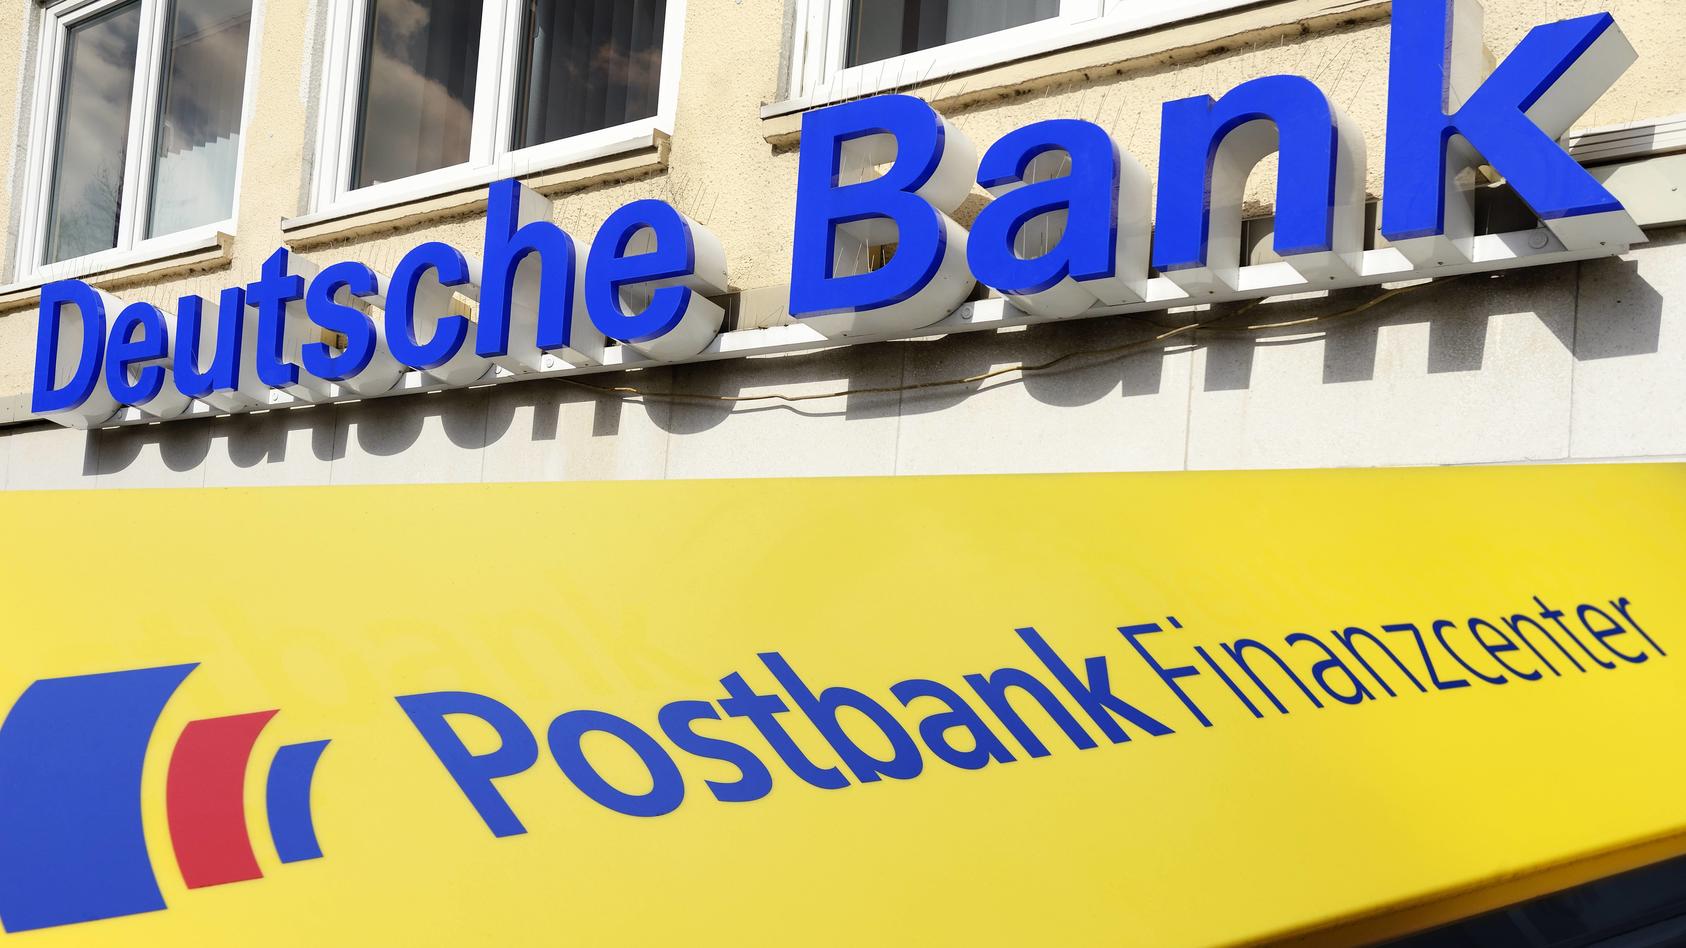 Deutsche-bank-and-Postbank merger